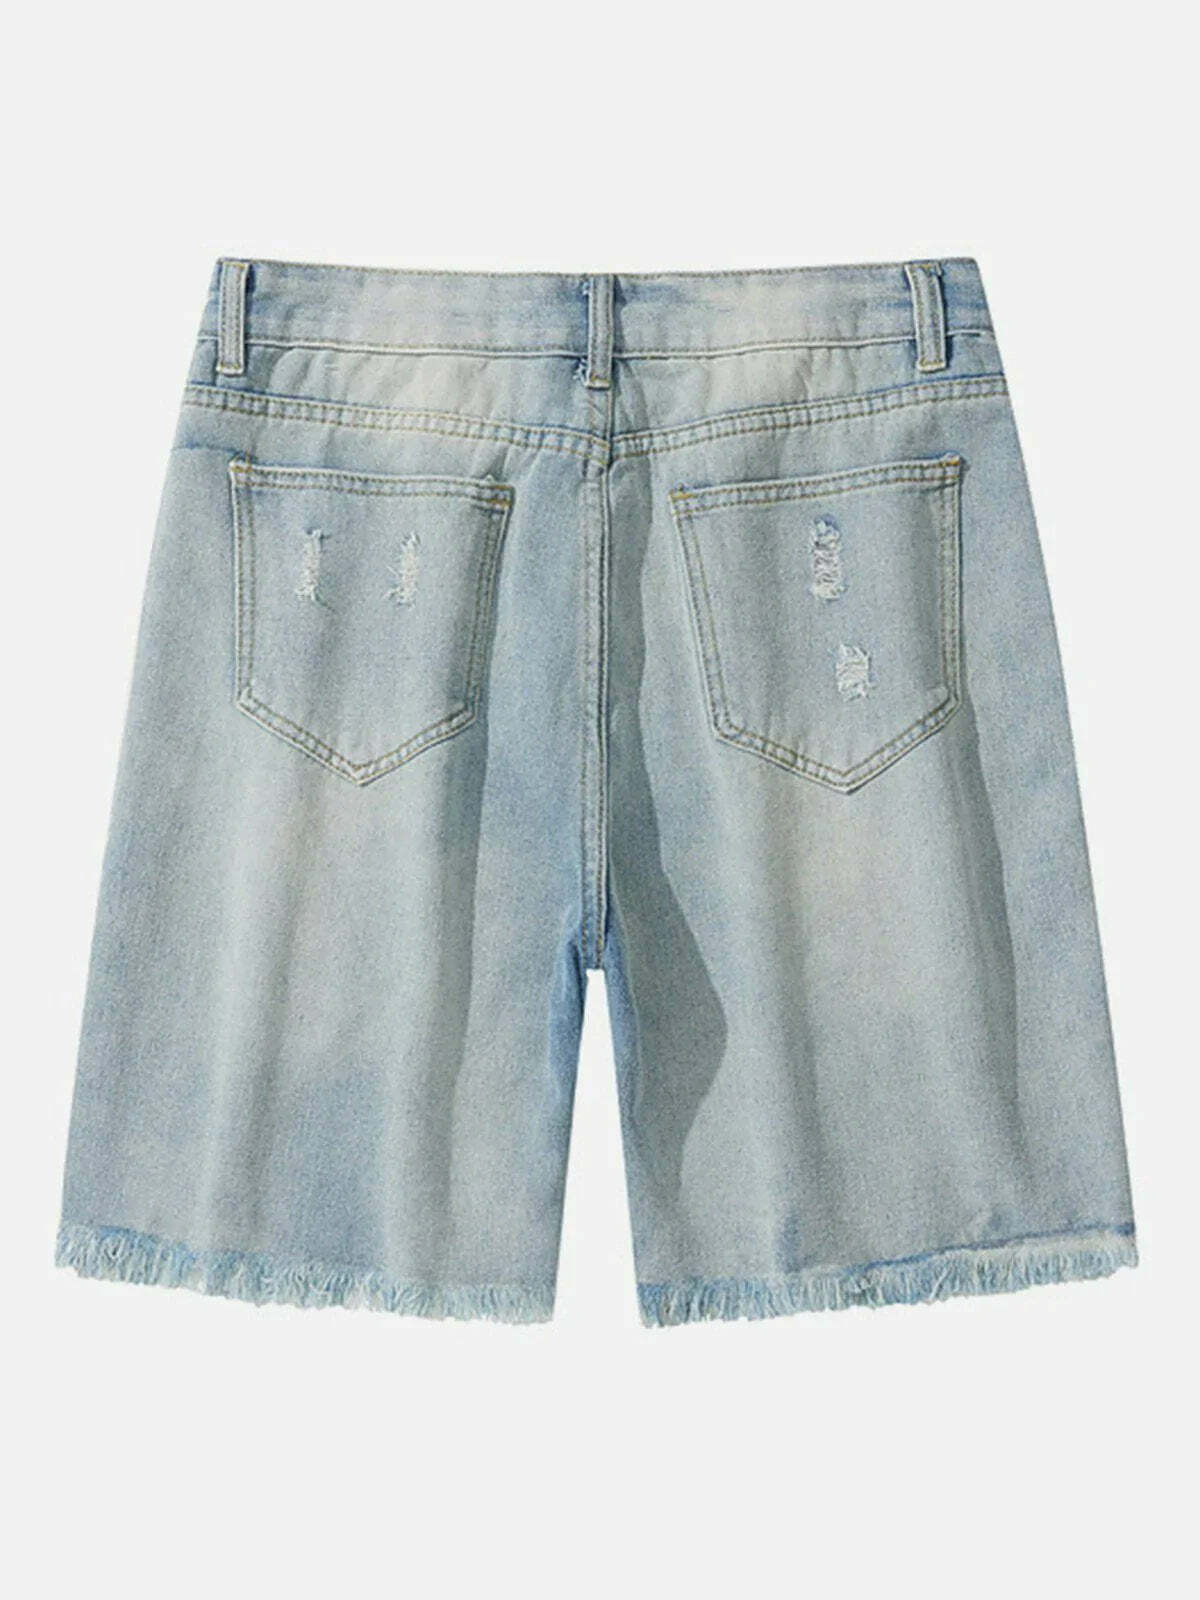 vintage washed denim shorts retro & urban style 7831